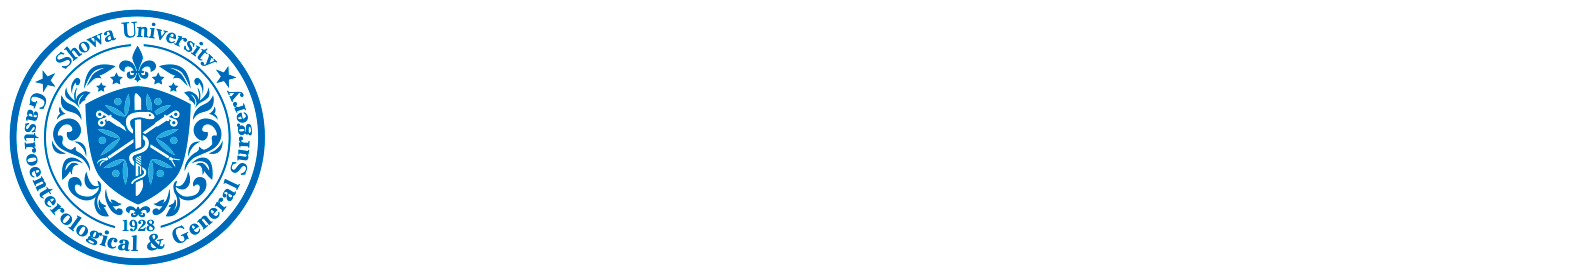 昭和大学医学部 外科学講座 消化器・一般外科学部門